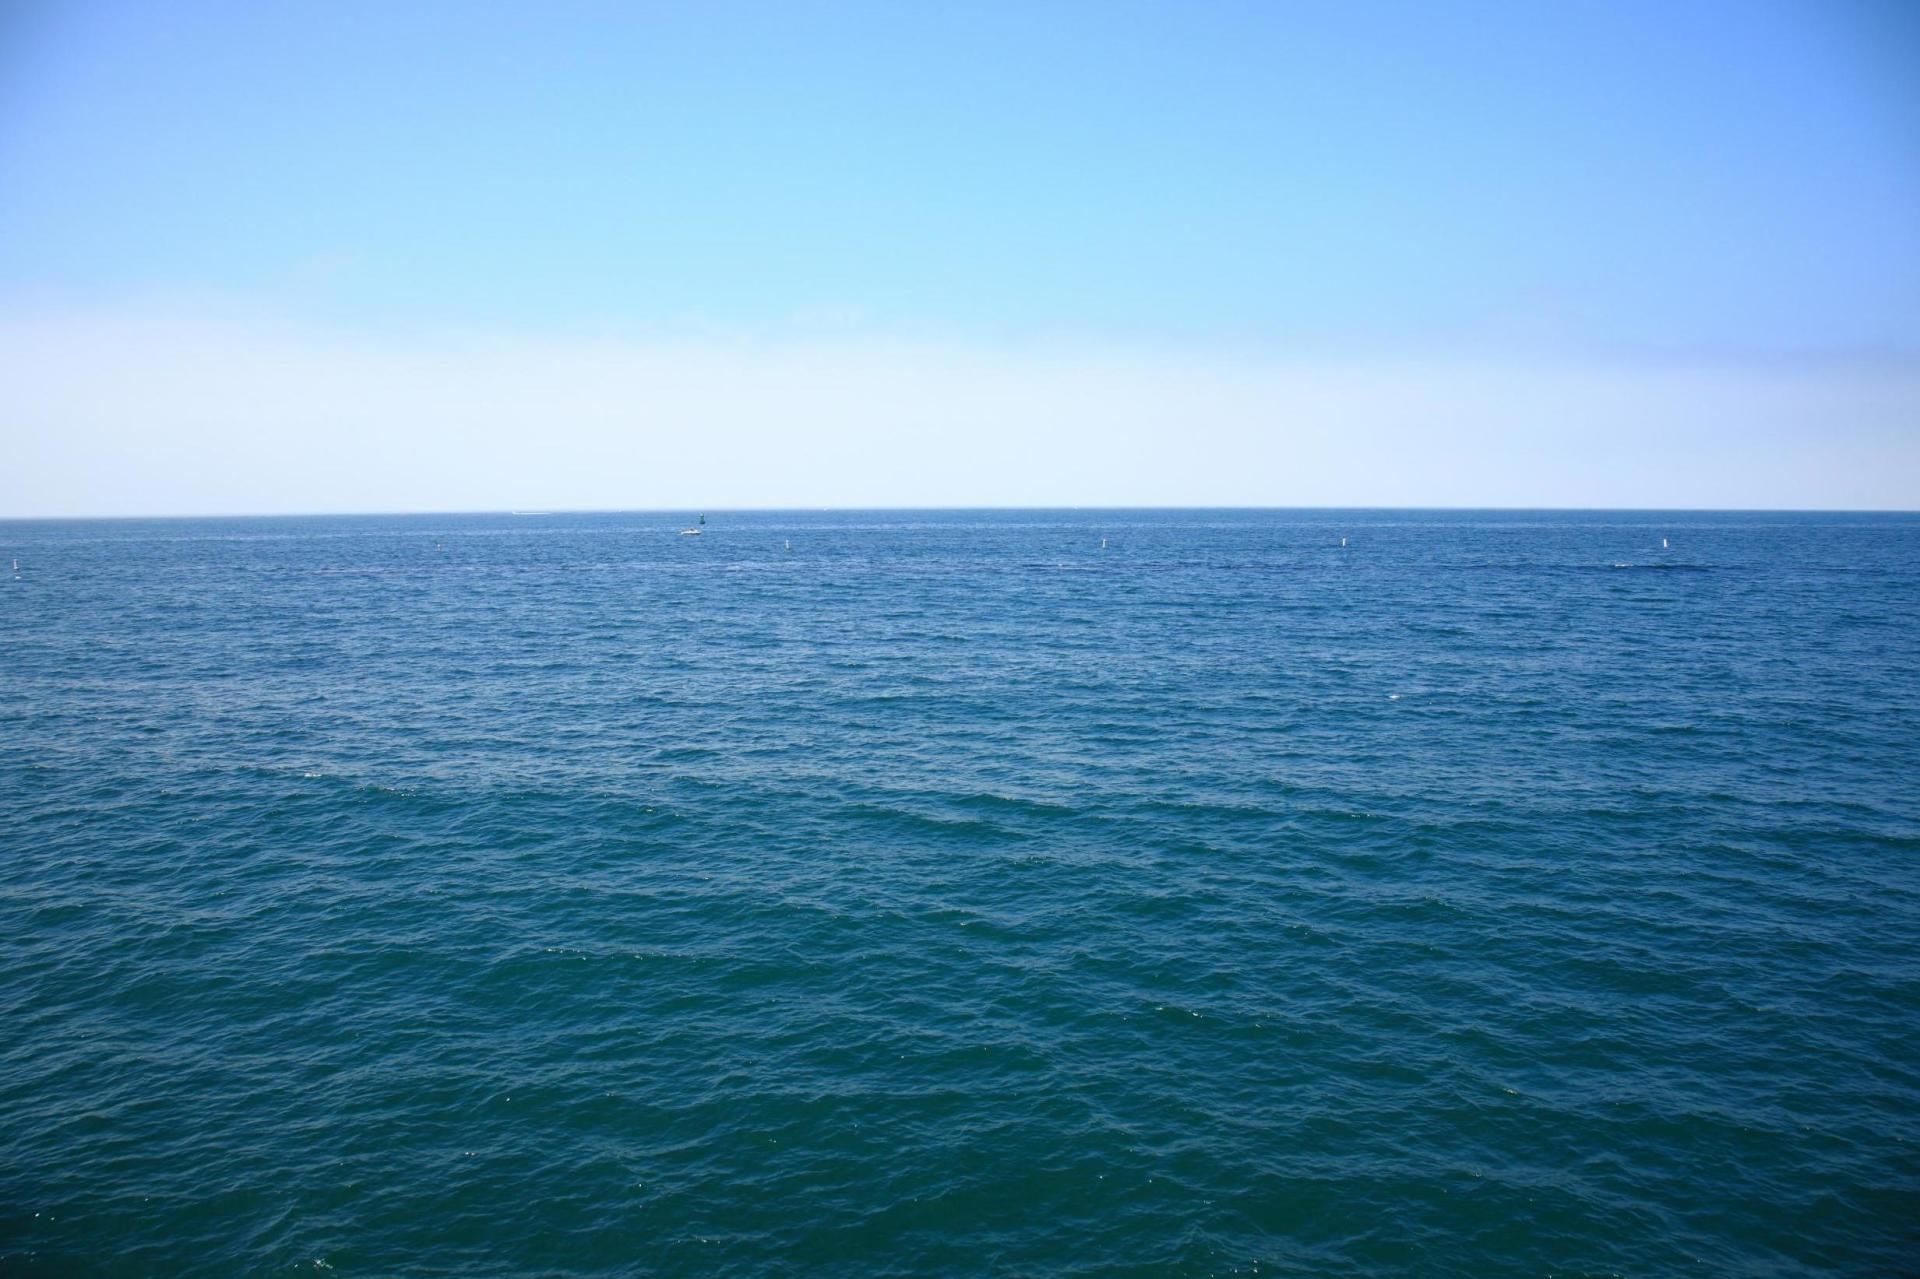 Ученые выяснили, что уровень Мирового океана растет быстрее, чем предполагалось